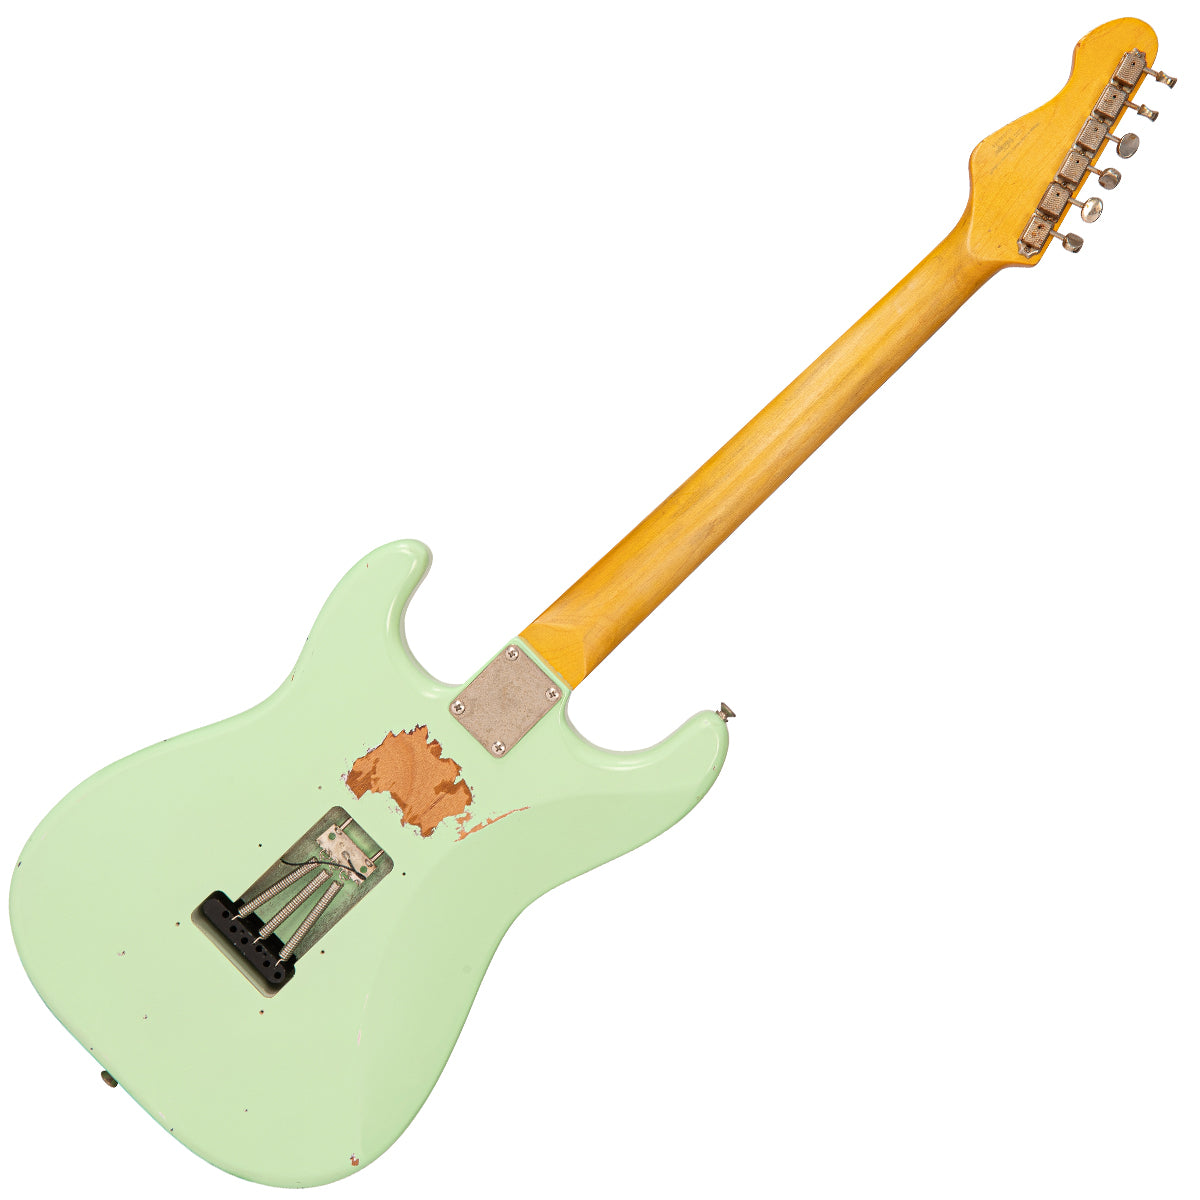 SOLD - Vintage V6 ProShop Custom Build ~ Surf Green, Electrics for sale at Richards Guitars.